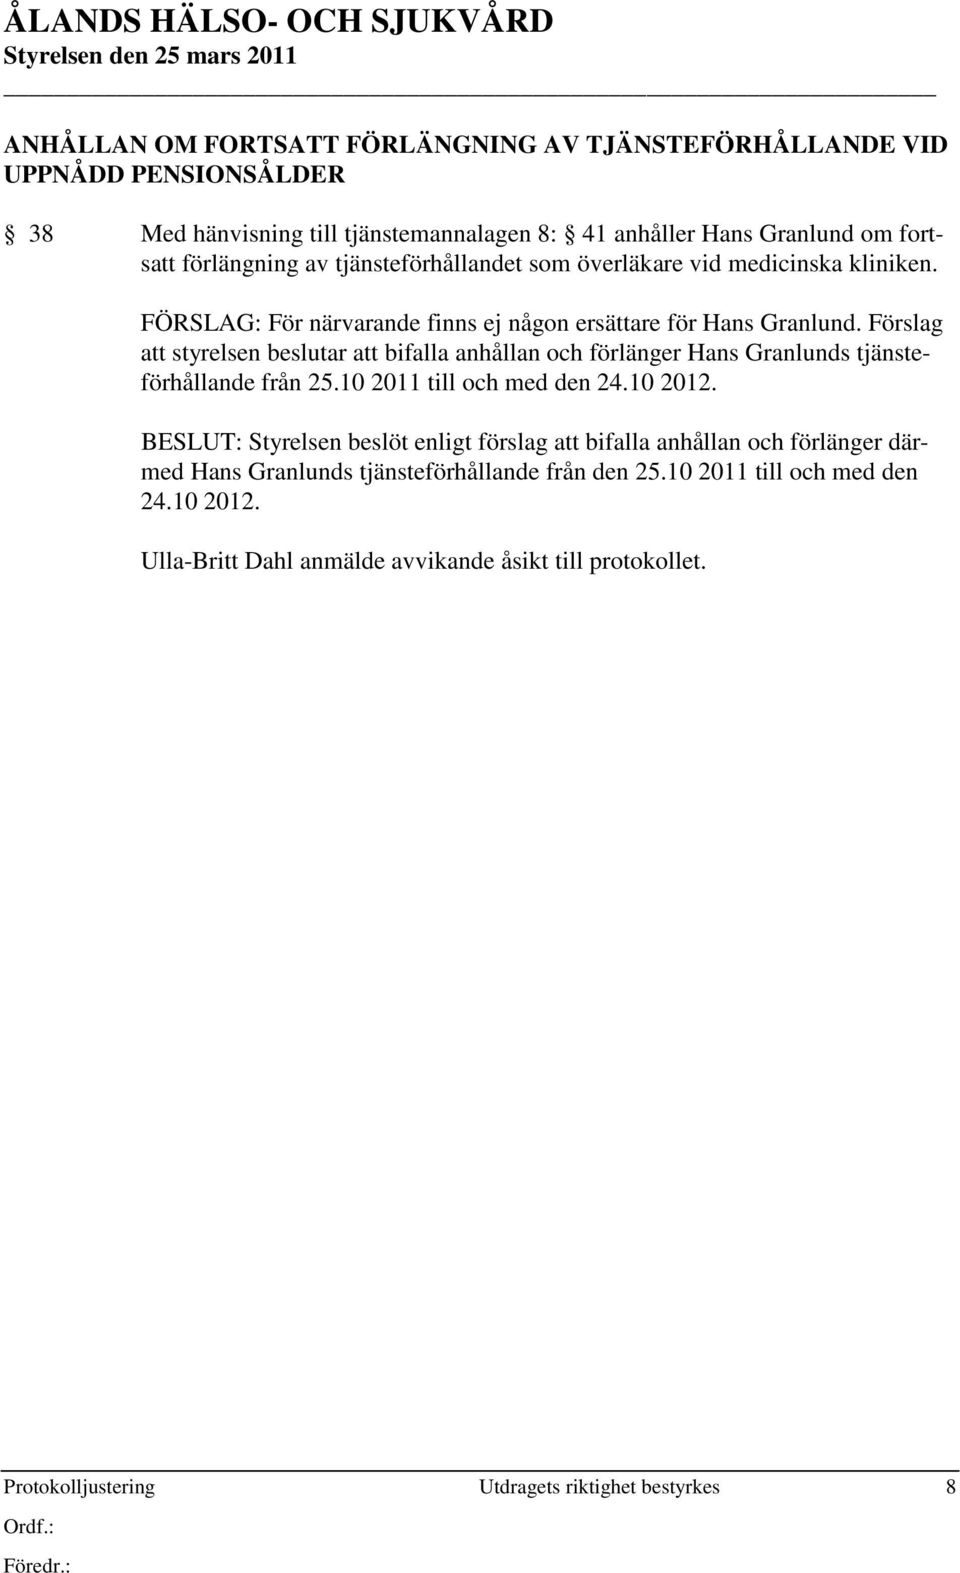 Förslag att styrelsen beslutar att bifalla anhållan och förlänger Hans Granlunds tjänsteförhållande från 25.10 2011 till och med den 24.10 2012.